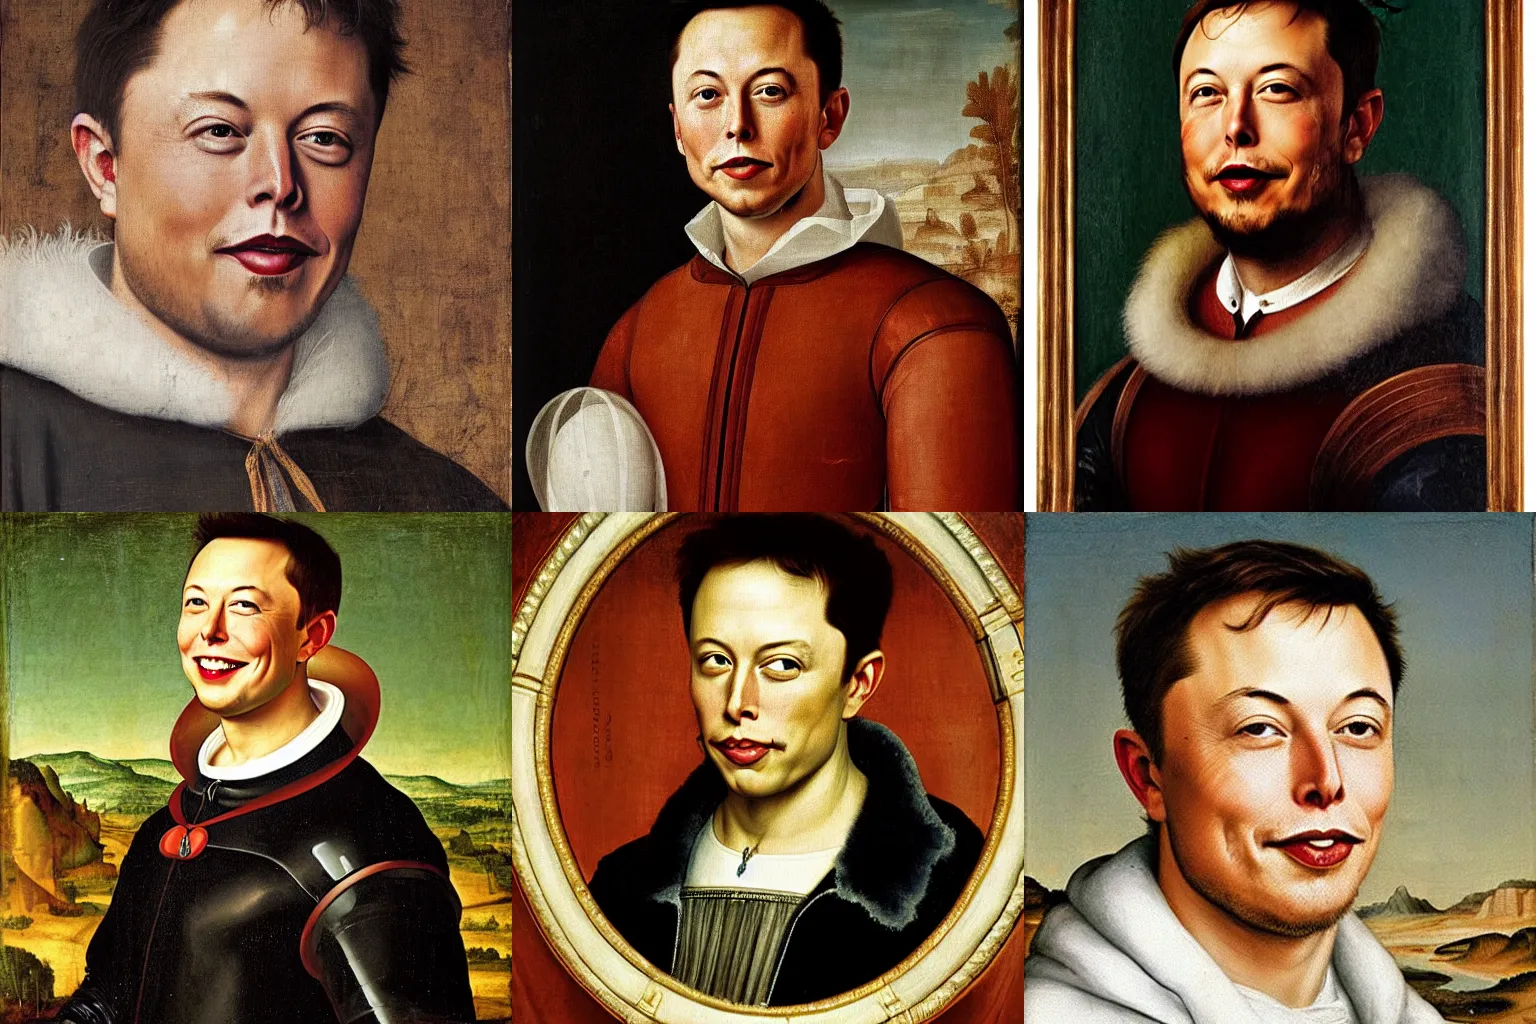 Prompt: A Renaissance portrait painting of Elon Musk smiling